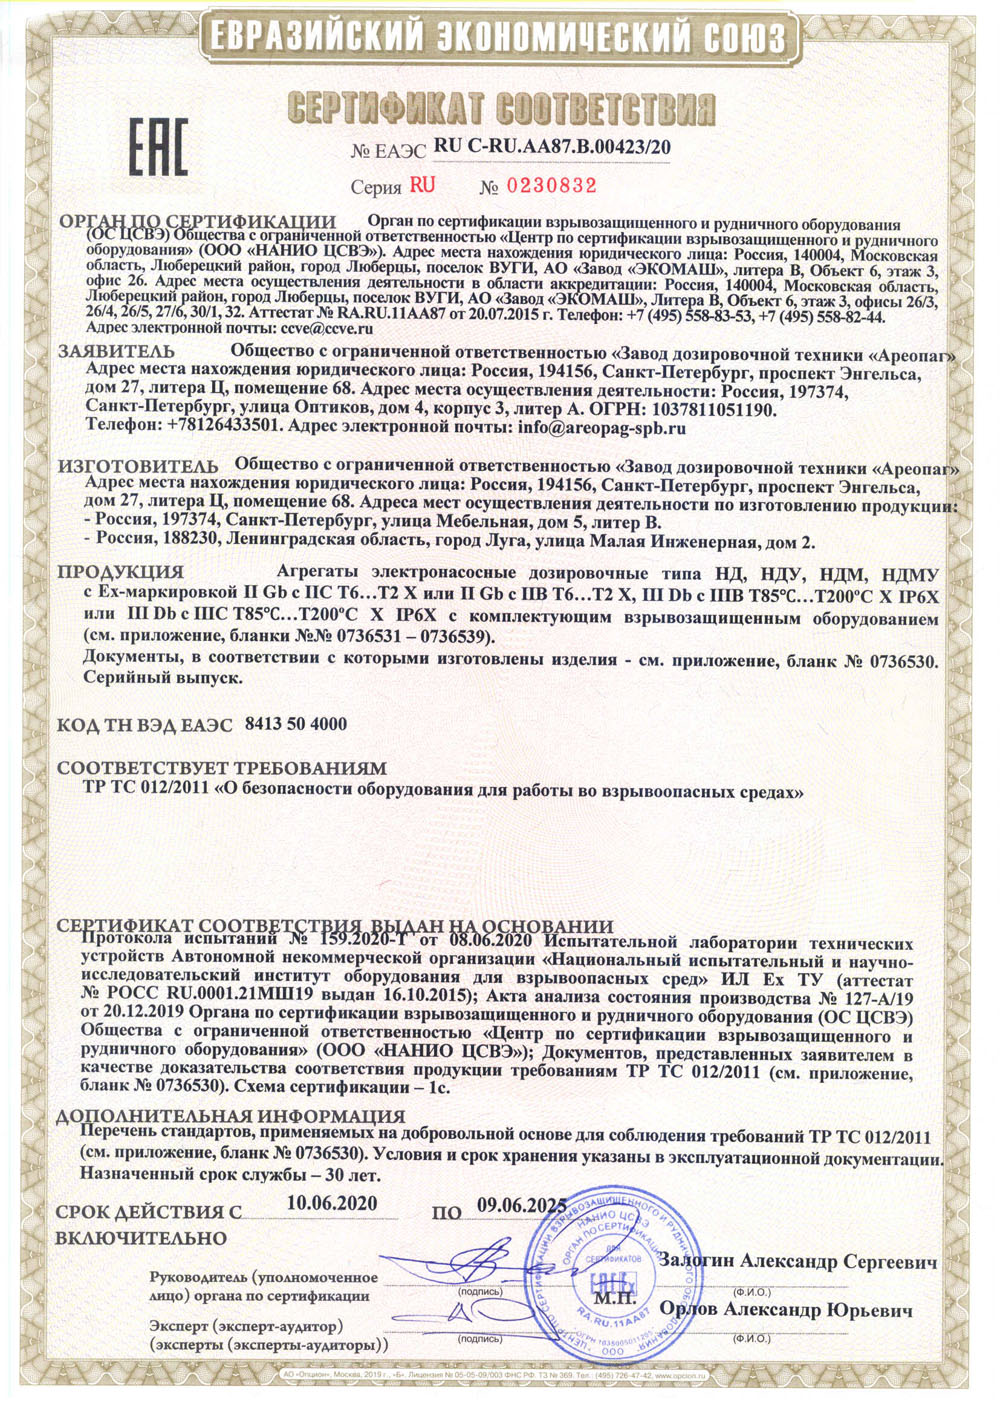 Сертификат соответствия RU C-RU.AA87.В.00423/20 Агрегаты электронасосные дозировочные типа НД, НДУ, НДМ, НДМУ c EX-маркировкой